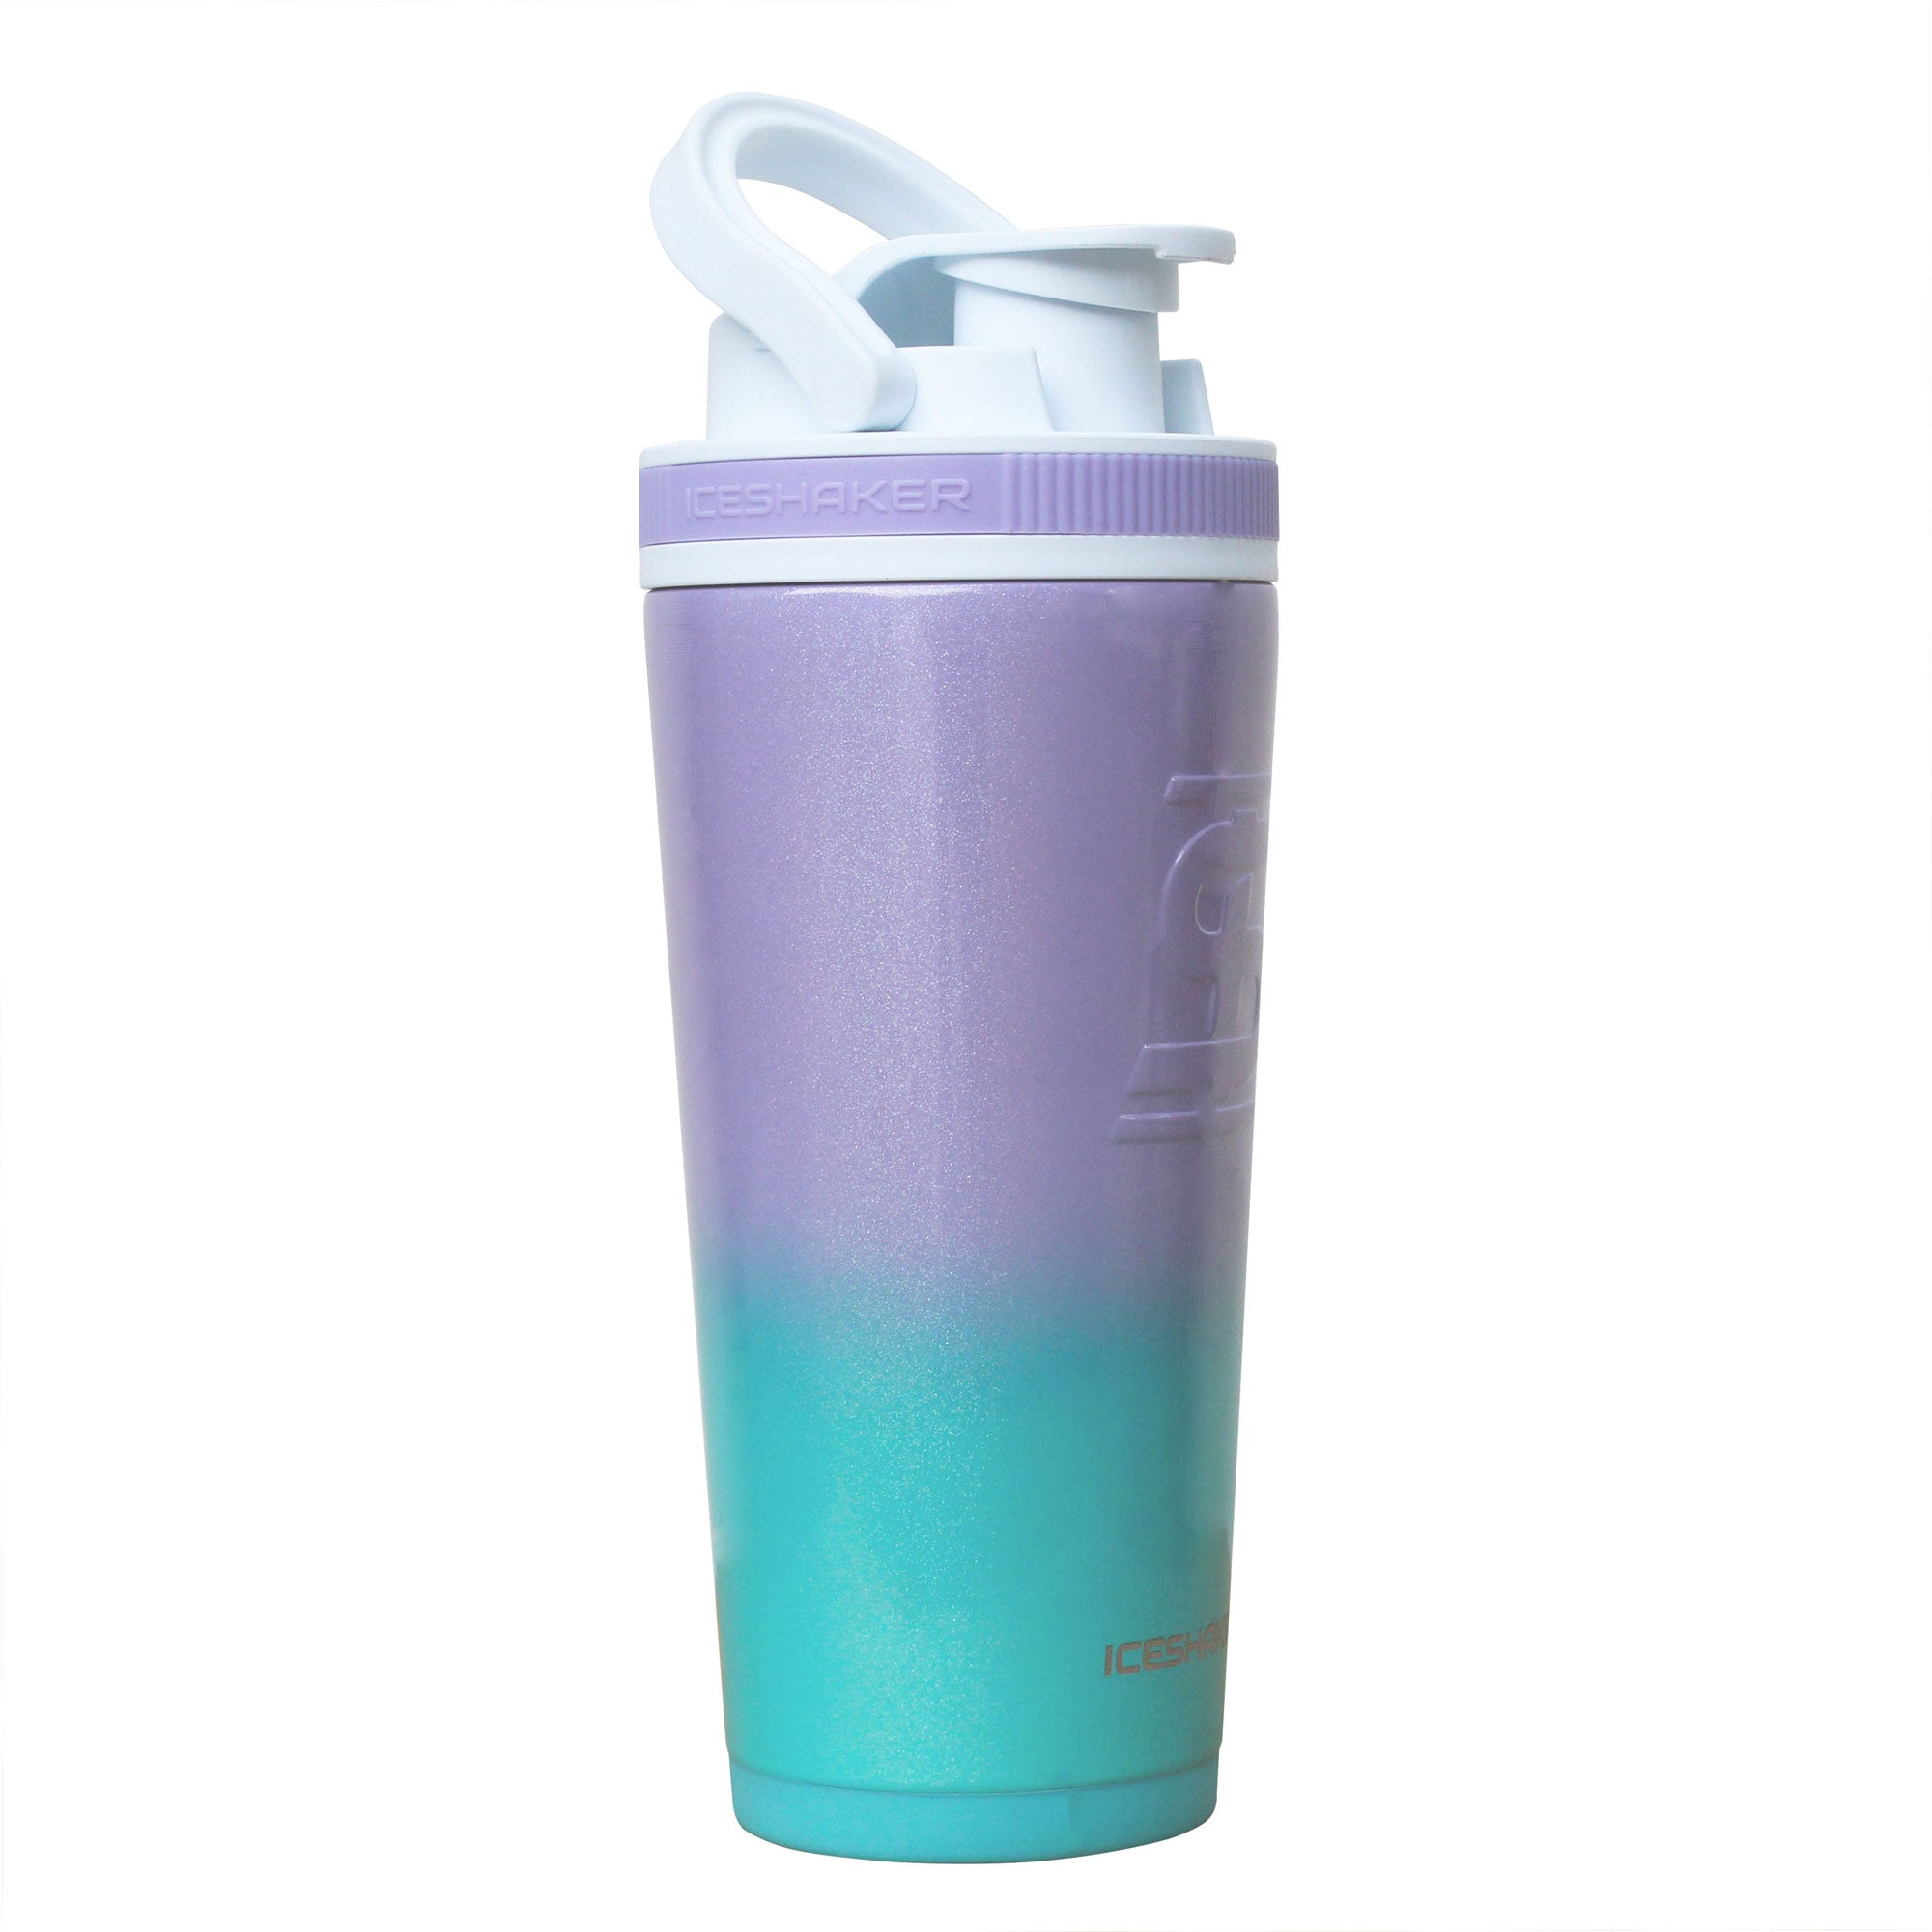 Ice Shaker Bottles for $27.99 (reg. $34.99) - Kids Activities, Saving  Money, Home Management